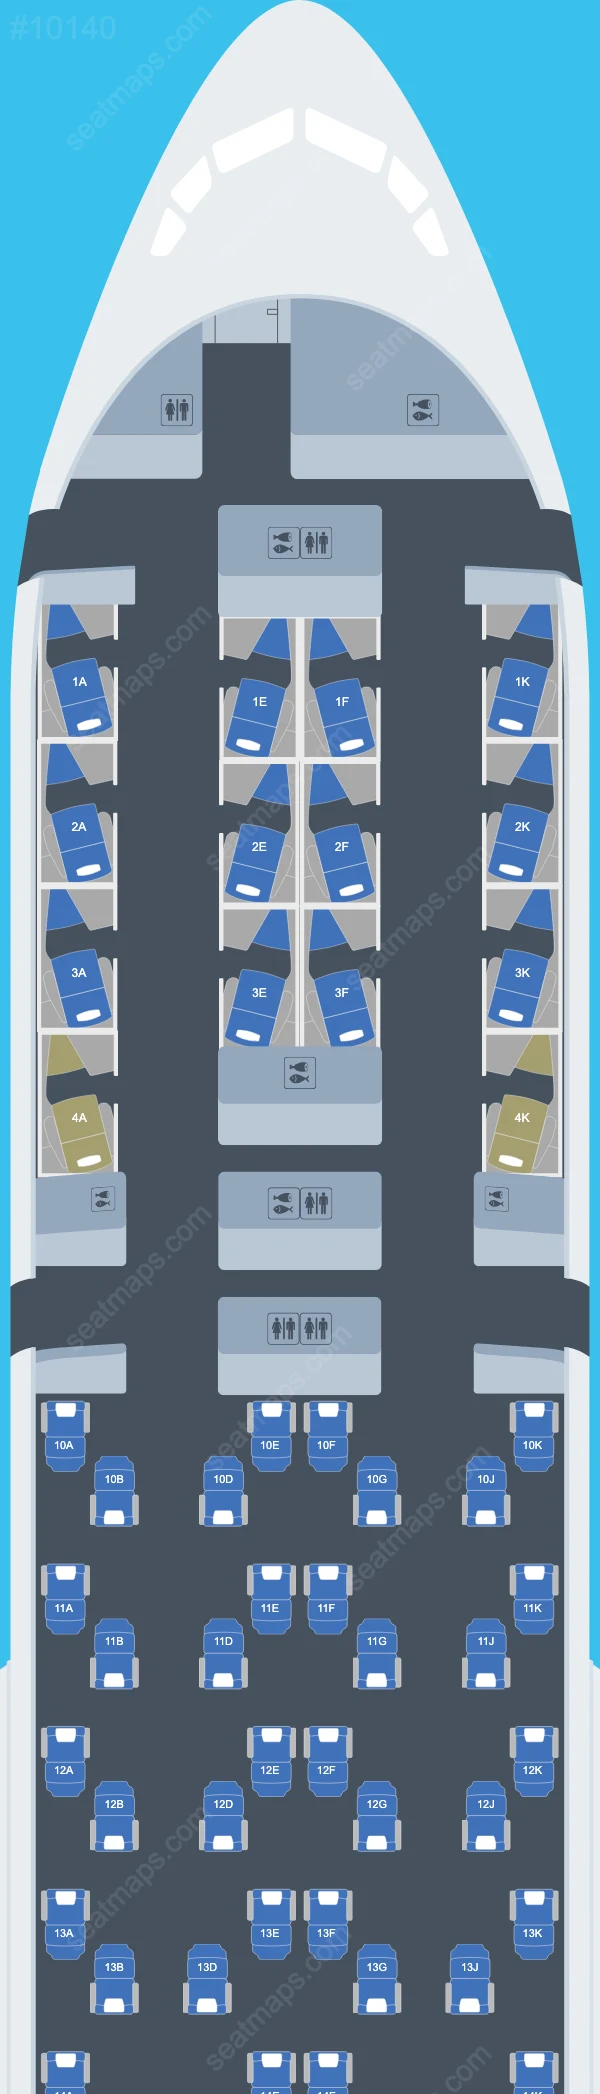 British Airways Boeing 777 Seat Maps 777-200 ER V.4